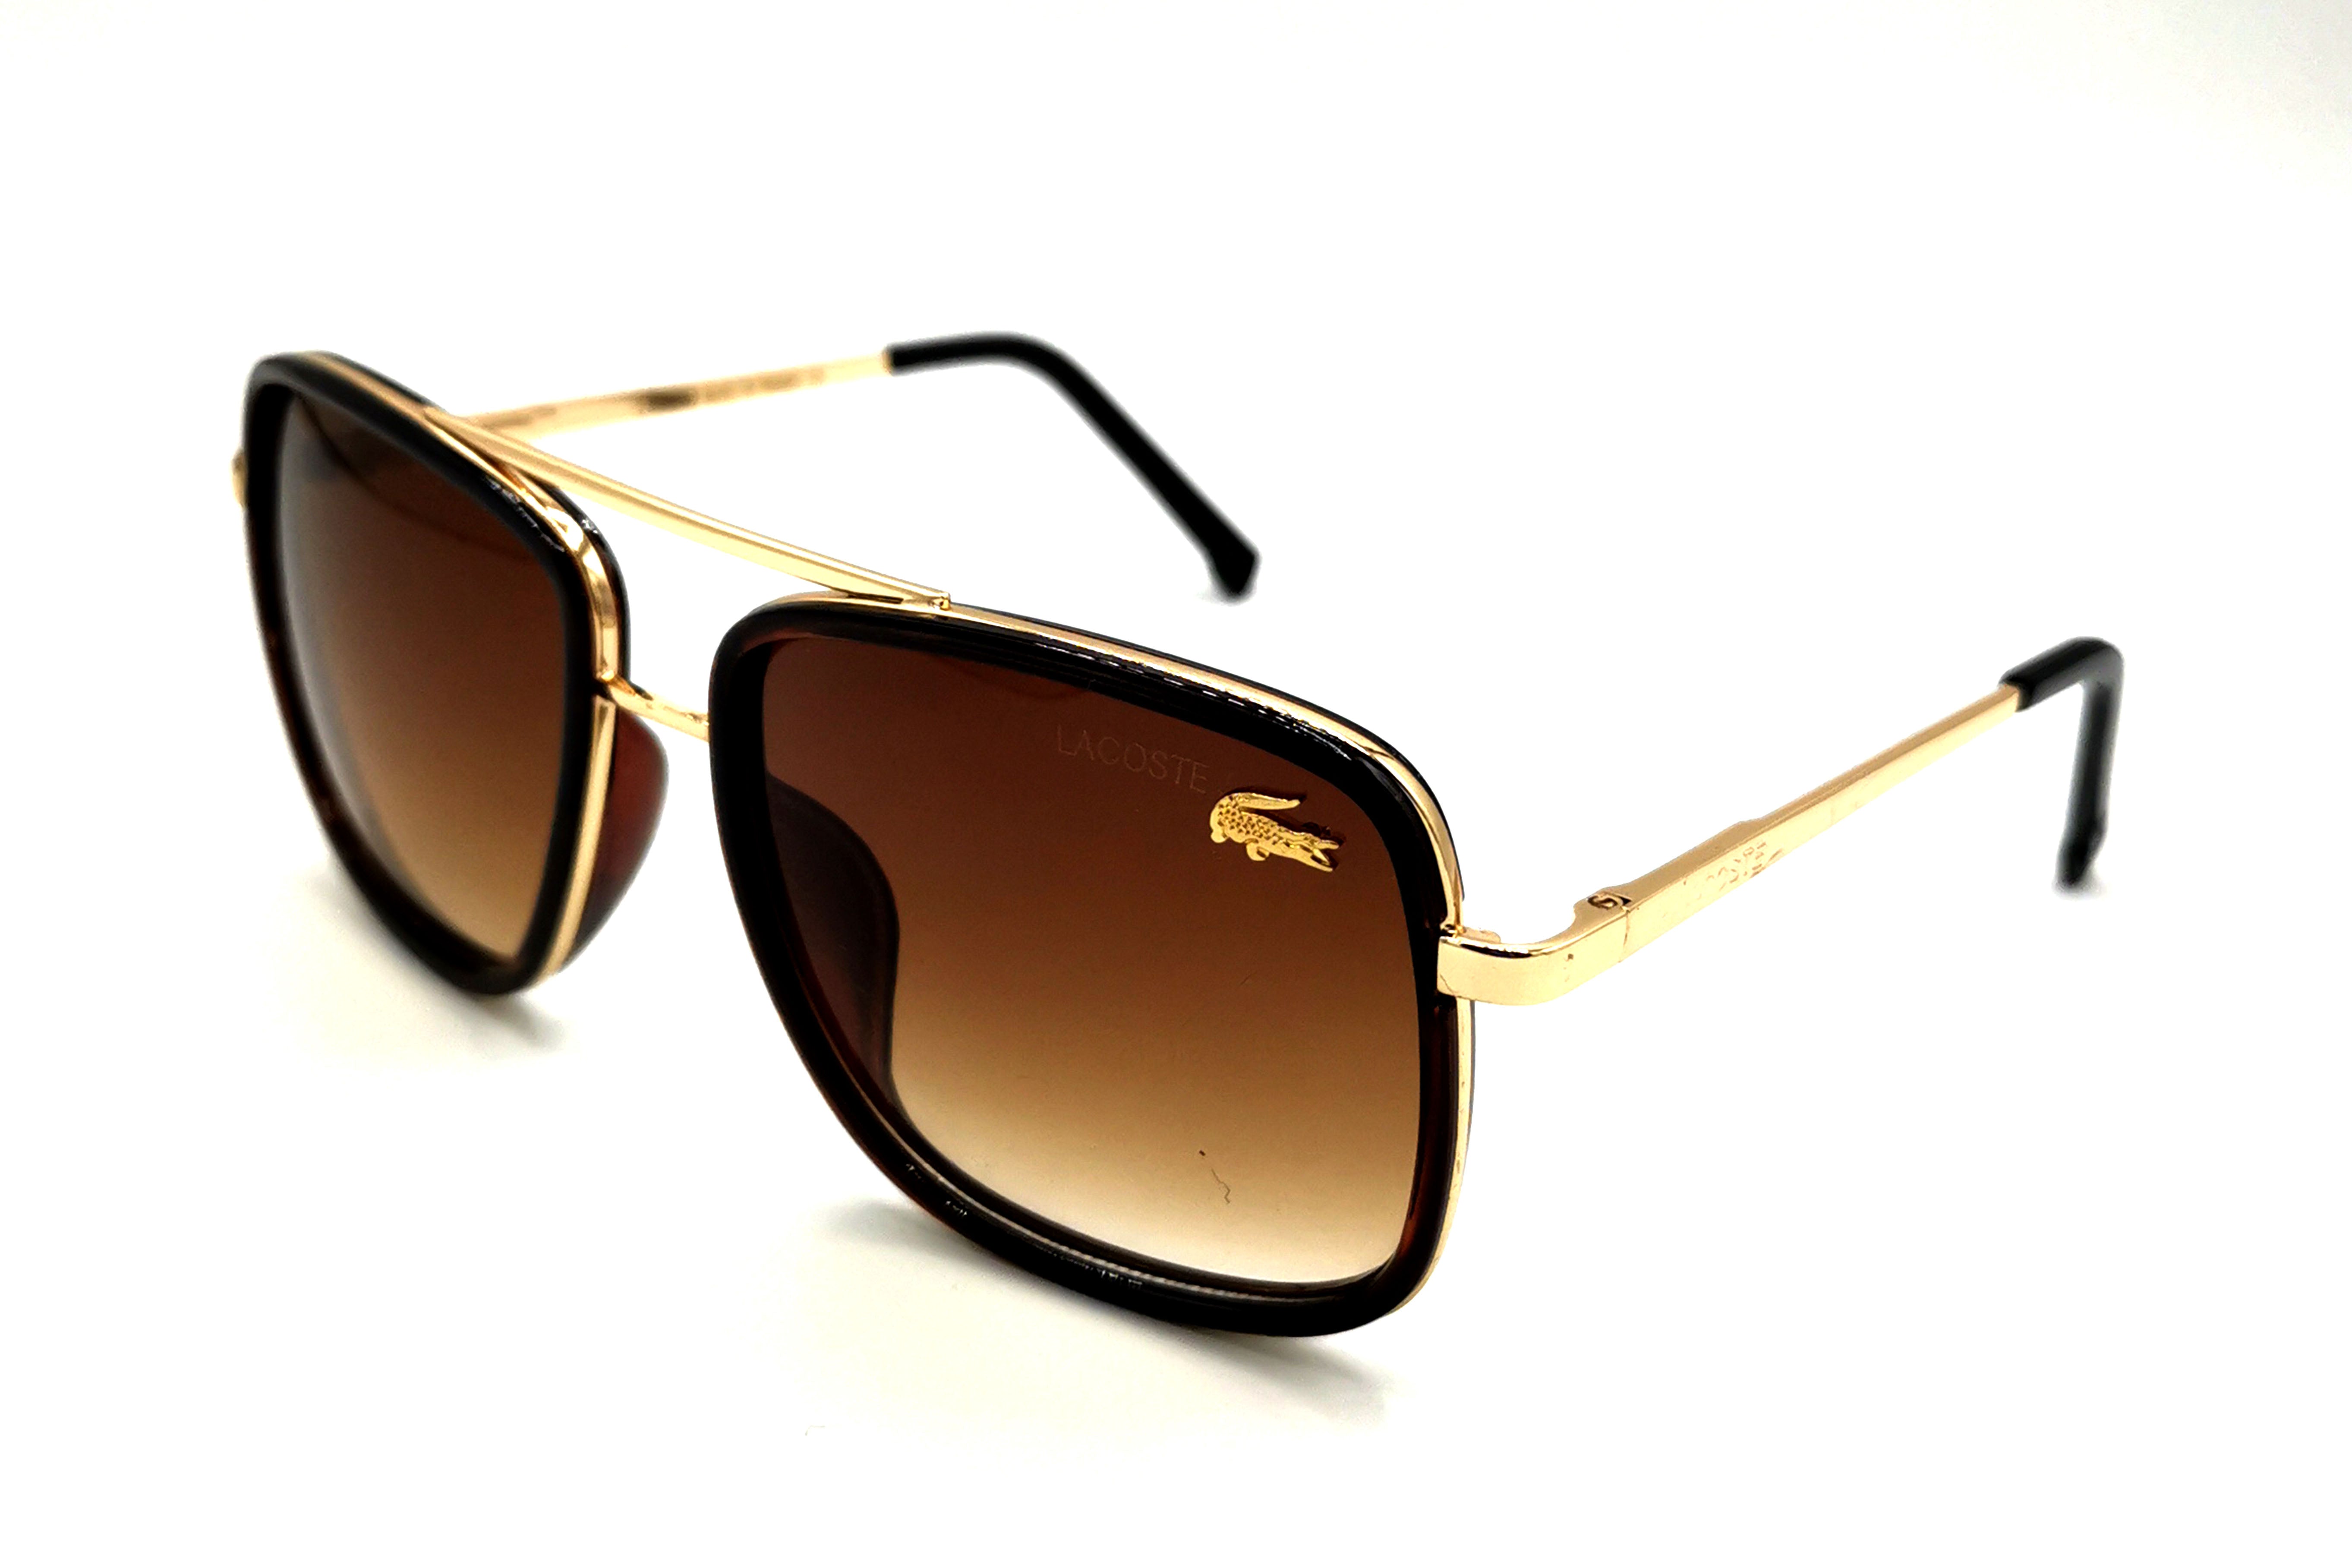 NS Classic - 143 - Black - Sunglasses